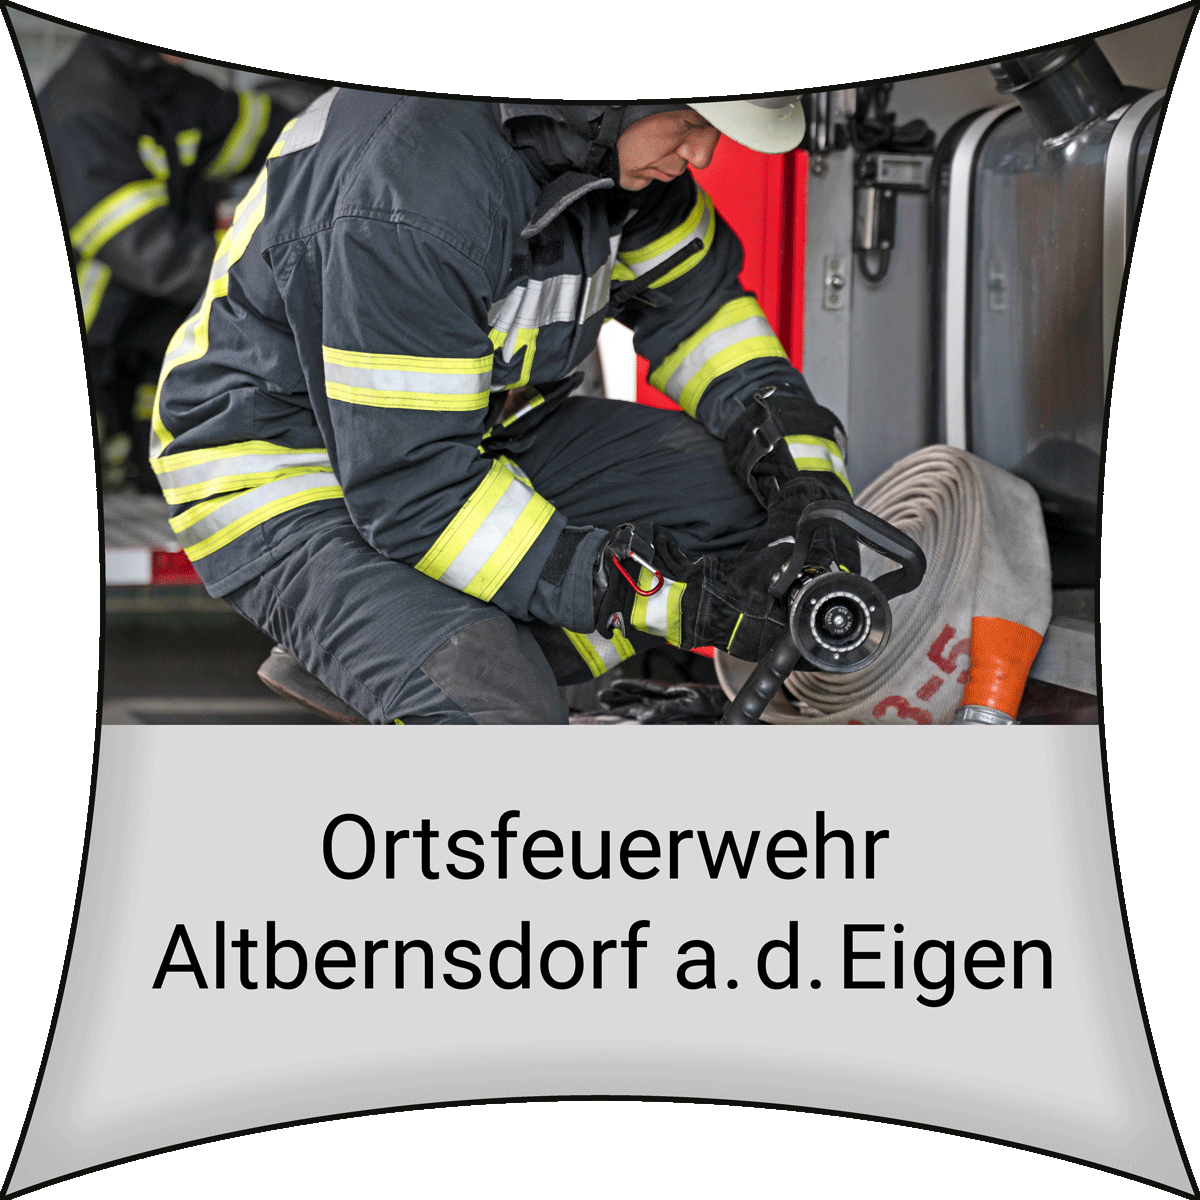 Ortsfeuerwehr Altbernsdorf a.d.Eigen